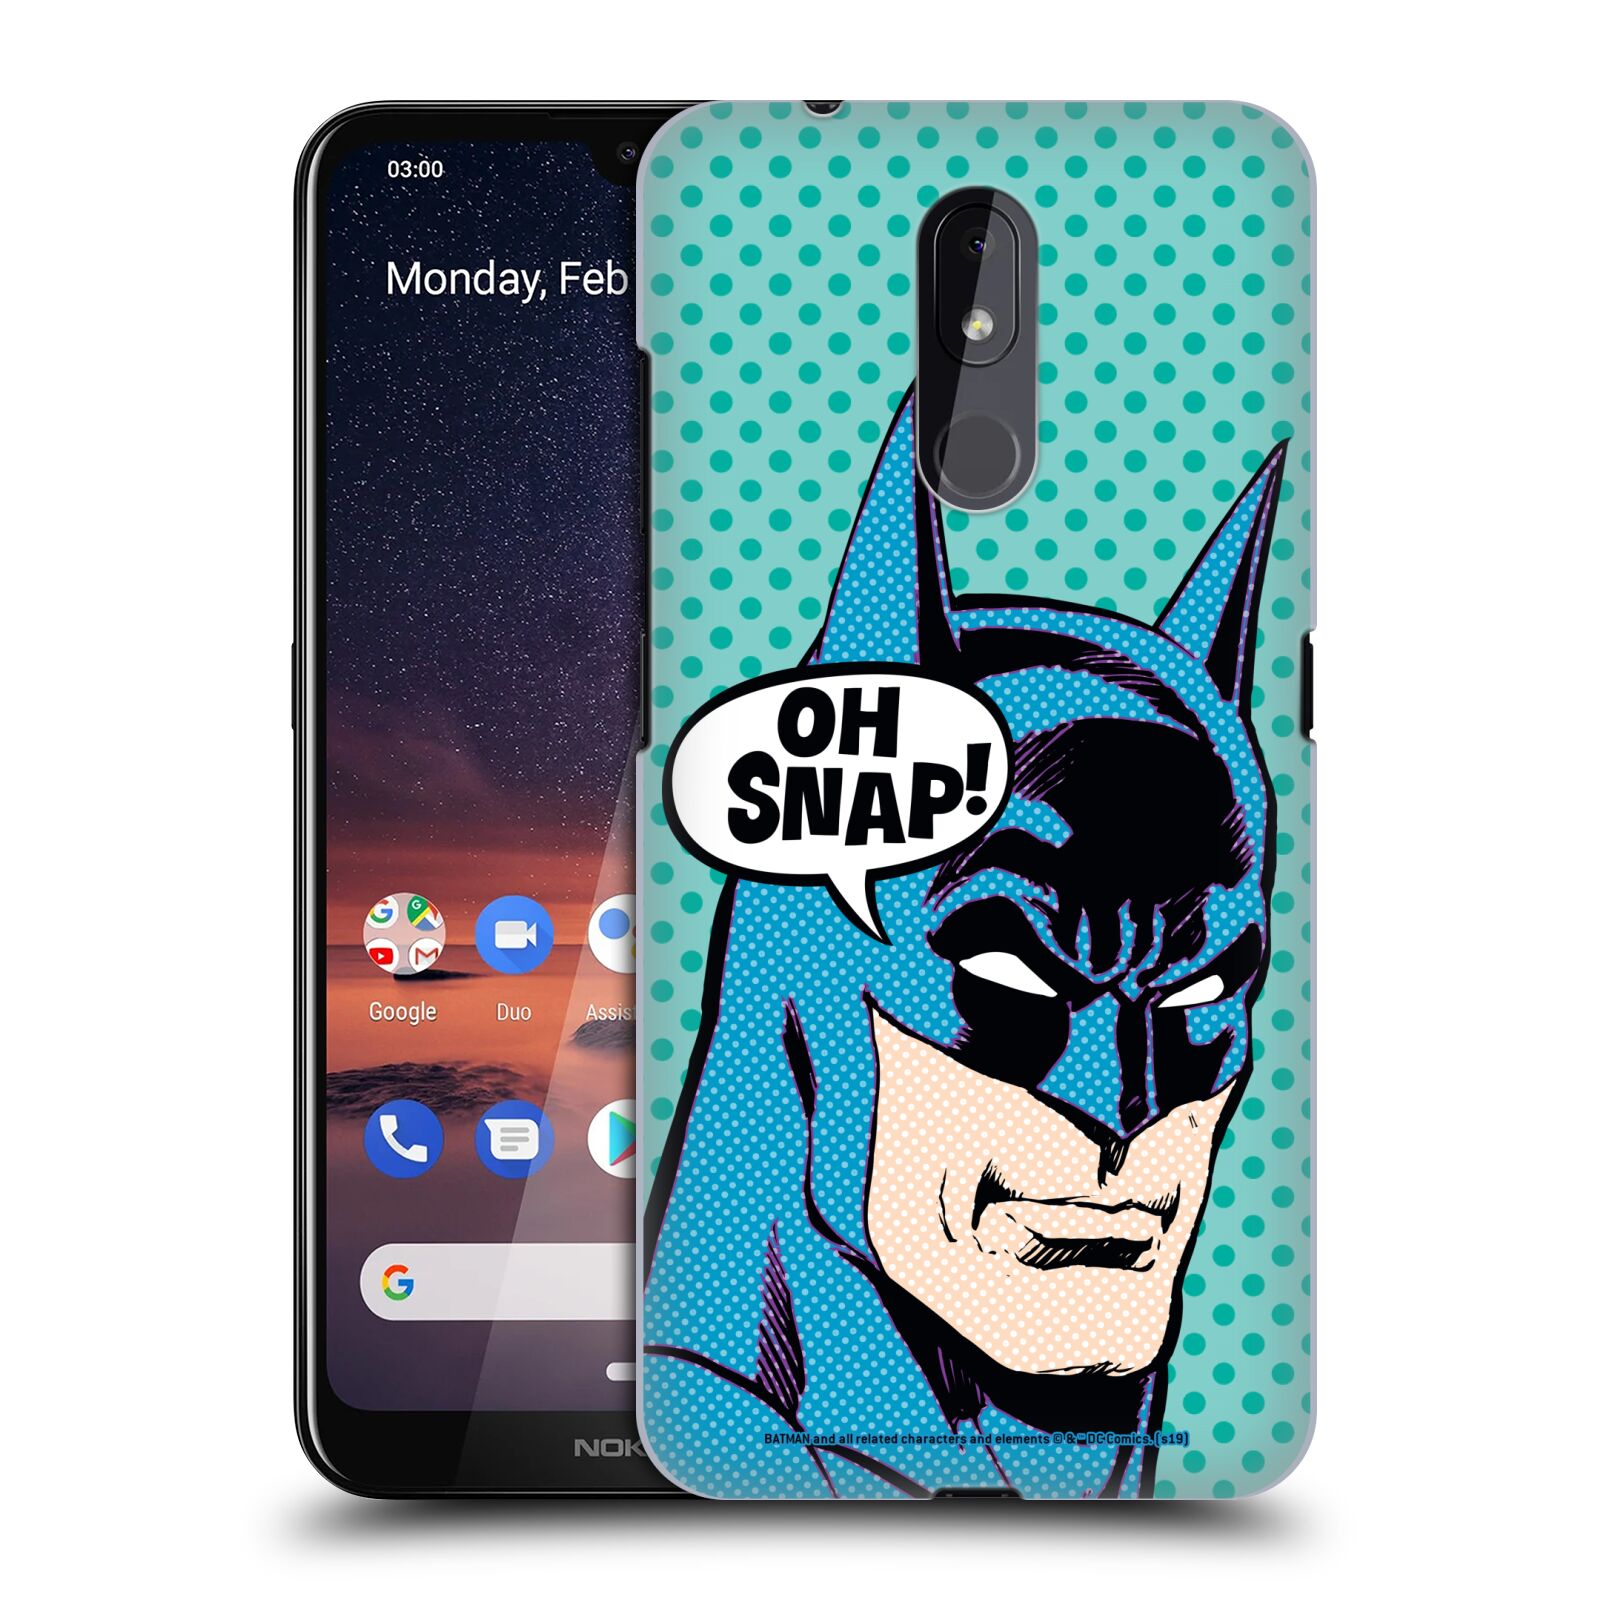 Pouzdro na mobil Nokia 3.2 - HEAD CASE - DC komix Batman tvář Pop Art